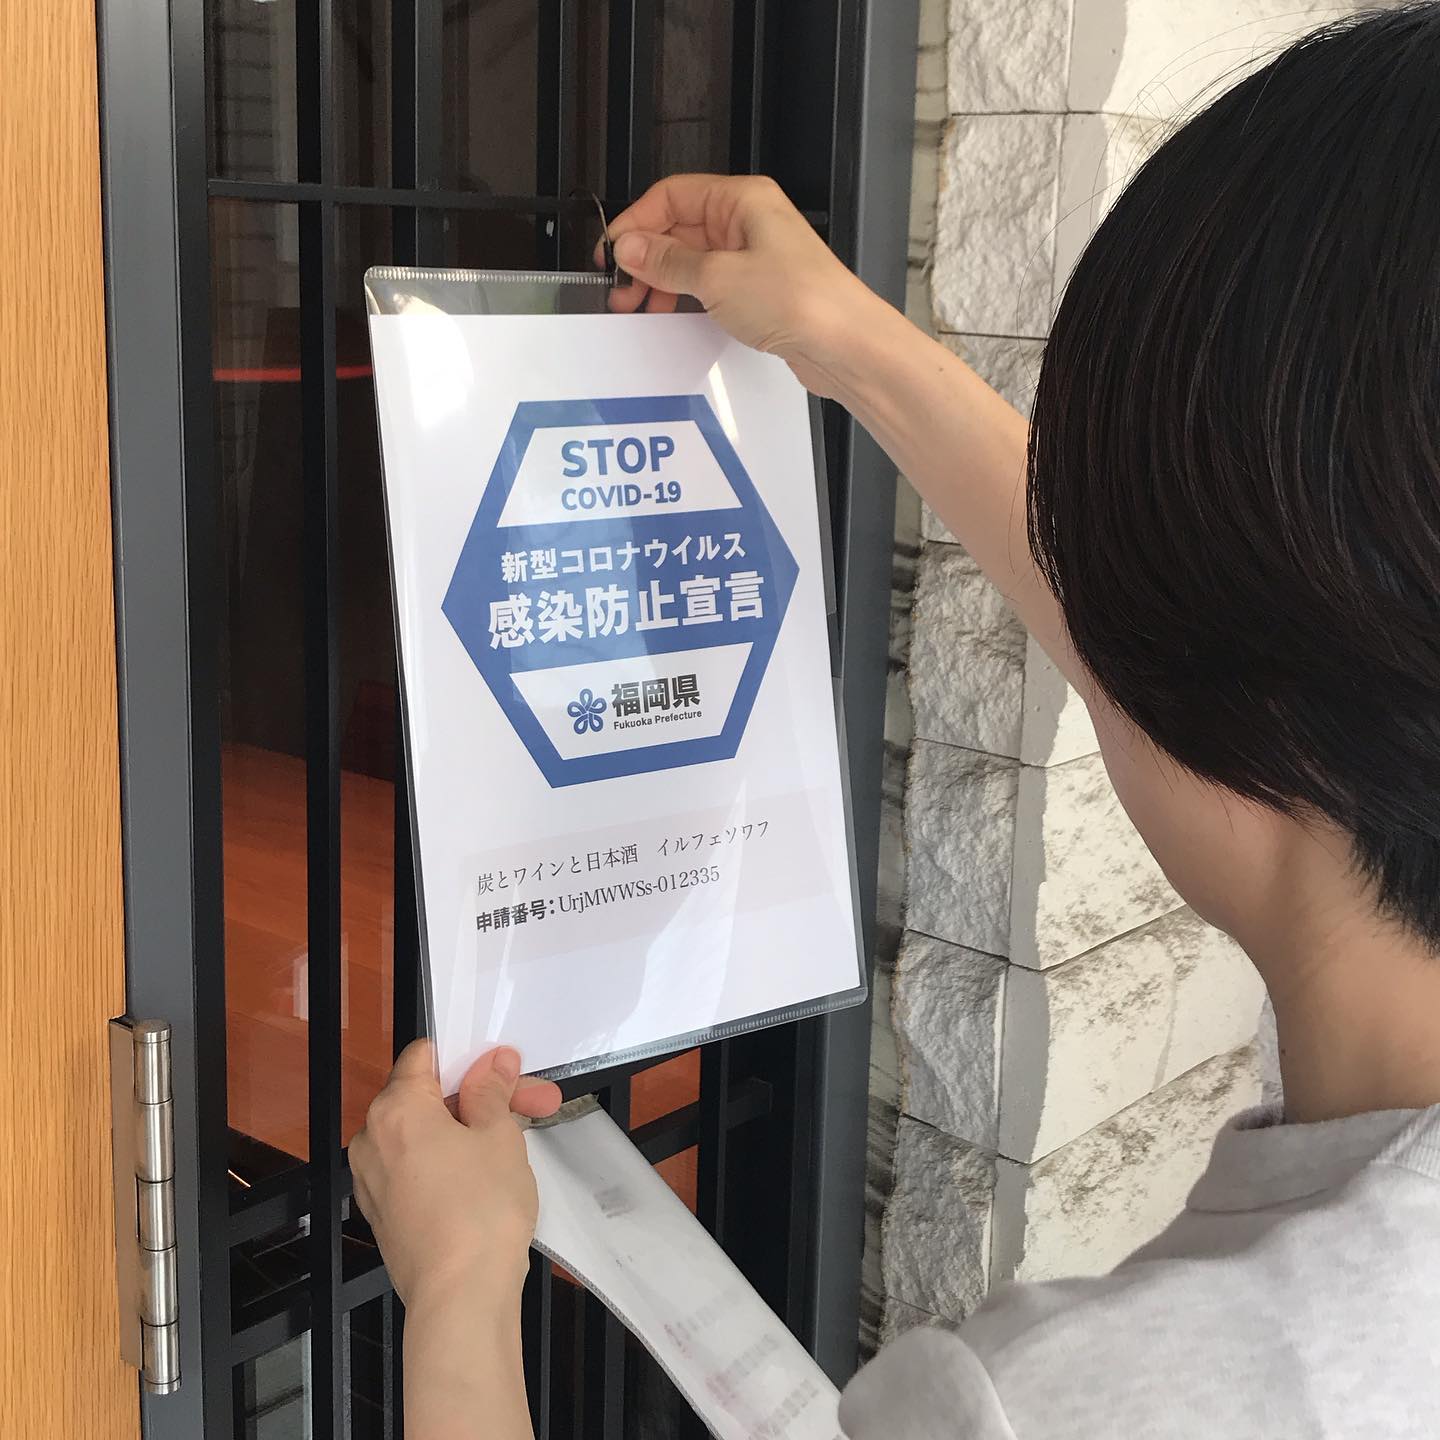 今日8/20も17時より営業です。福岡県の感染防止対策してますよステッカーを申請しました！席の間隔をあけて営業してますので、どうぞ宜しくお願いします(^ ^)#イルフェソワフ #ワイン#日本酒 #薬院#警固#感染防止宣言ステッカー